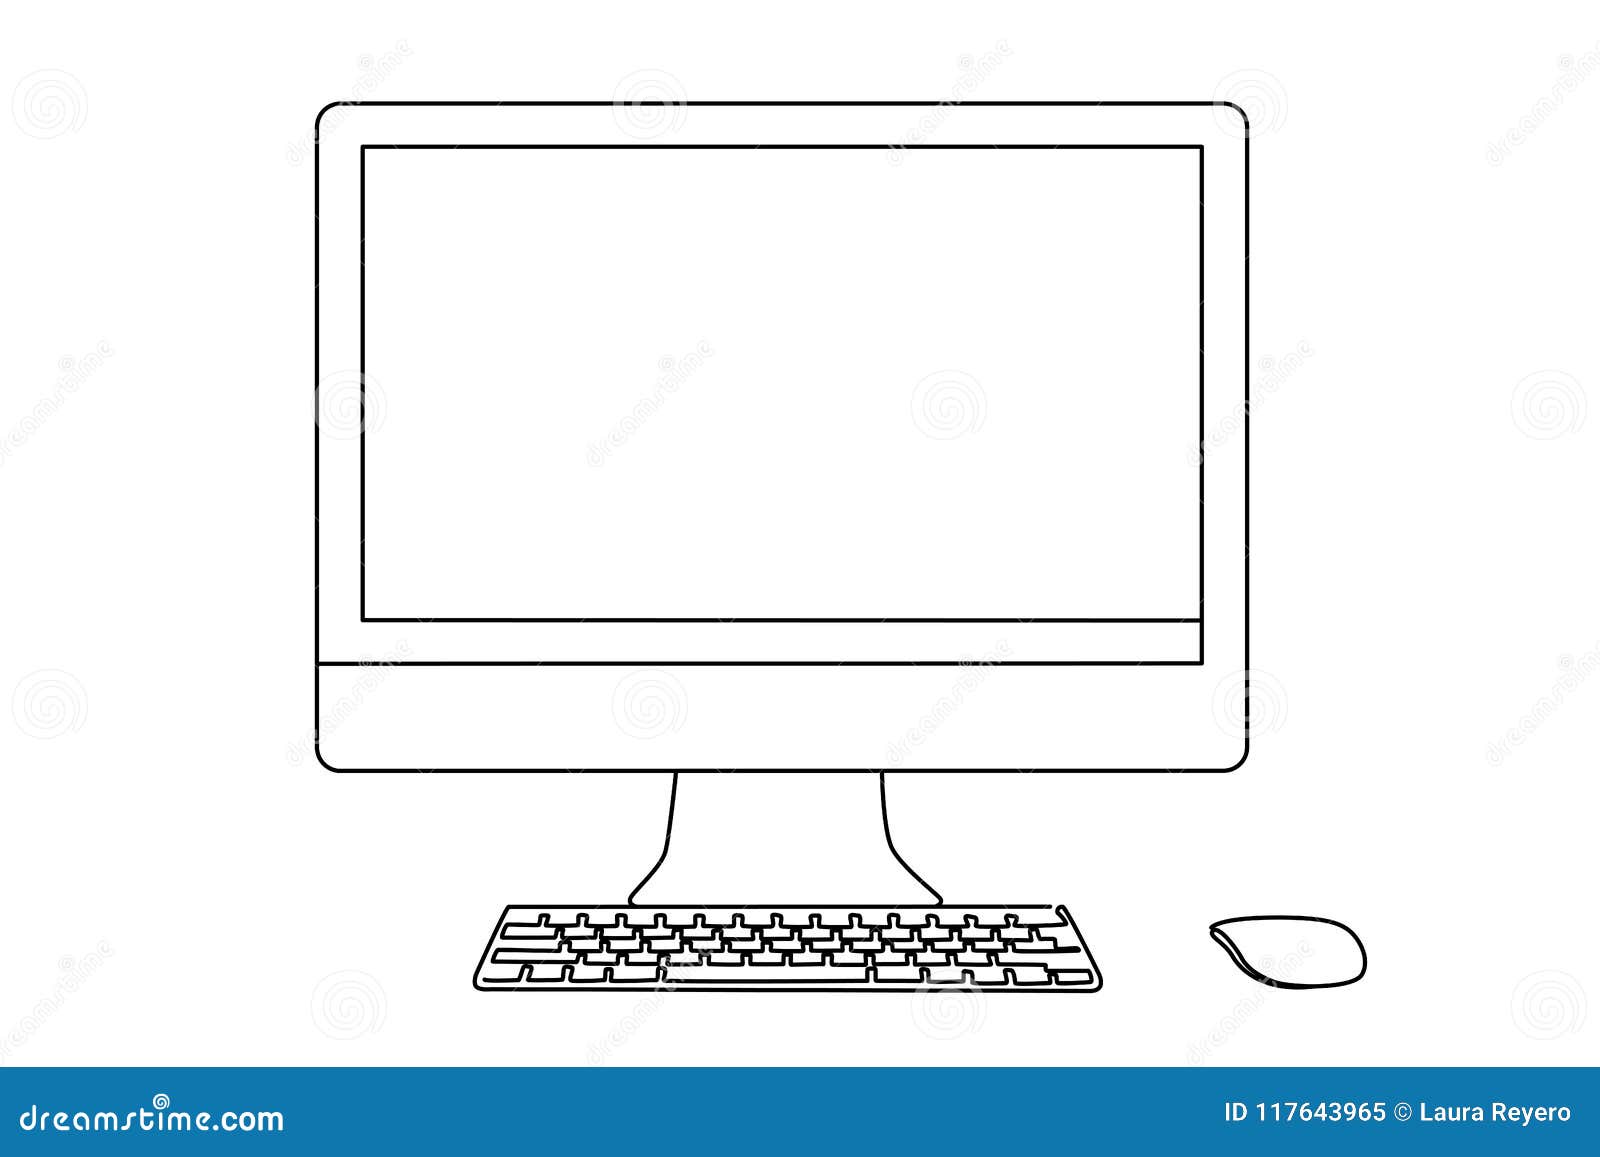 Desktop Keyboard And Mouse Stock Illustration Illustration Of